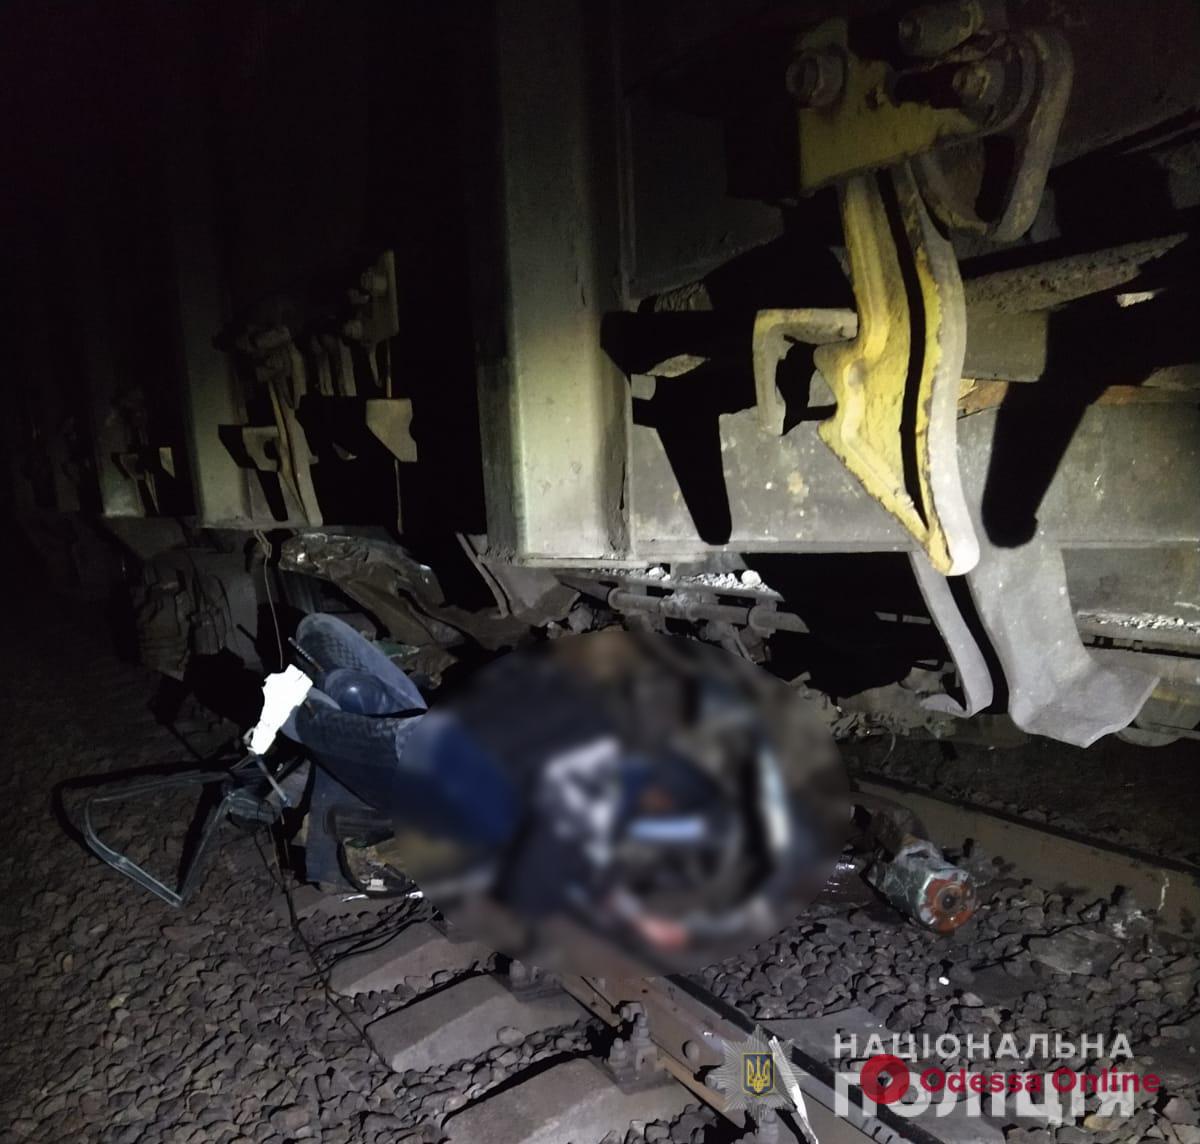 В Одесской области Opel сбил шлагбаум и попал под поезд — водитель погиб